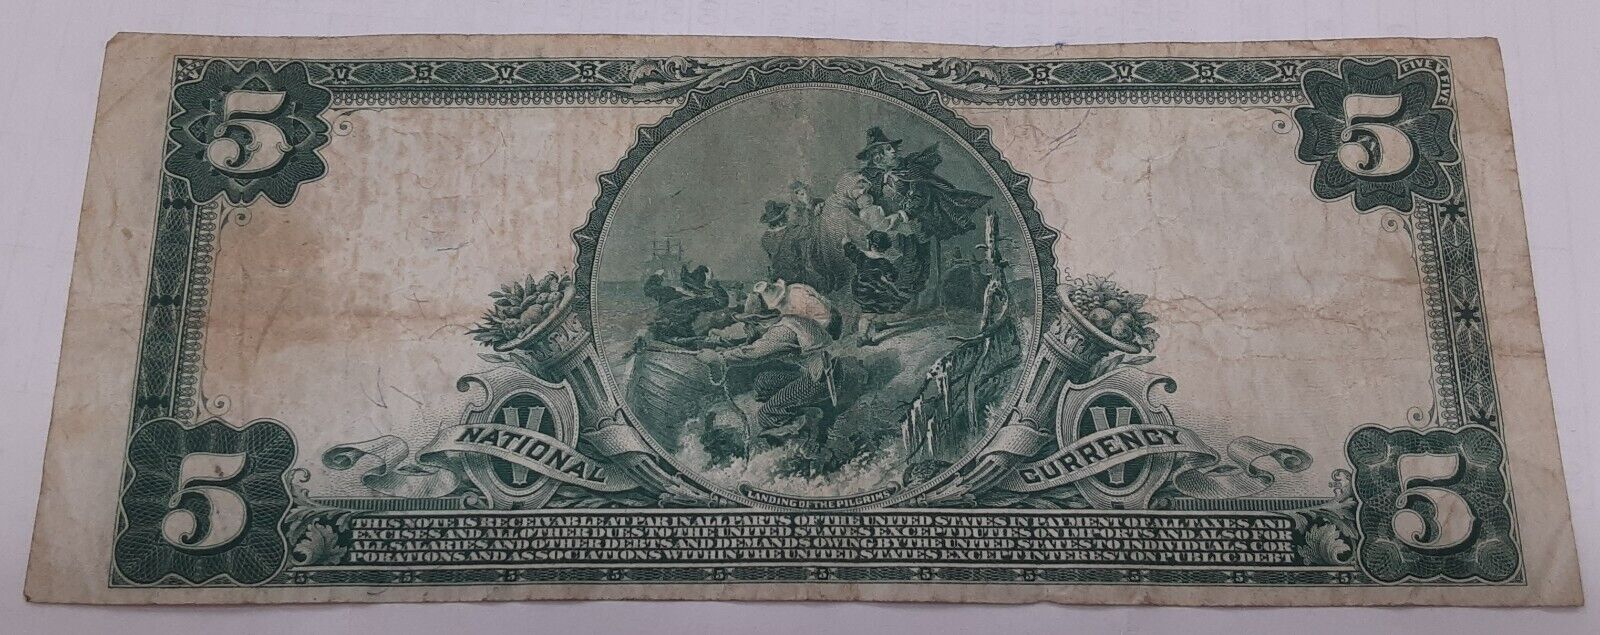 1902 $5 Plain Back US National Currency Note City NB Salem, NJ CH#3922  Net VF